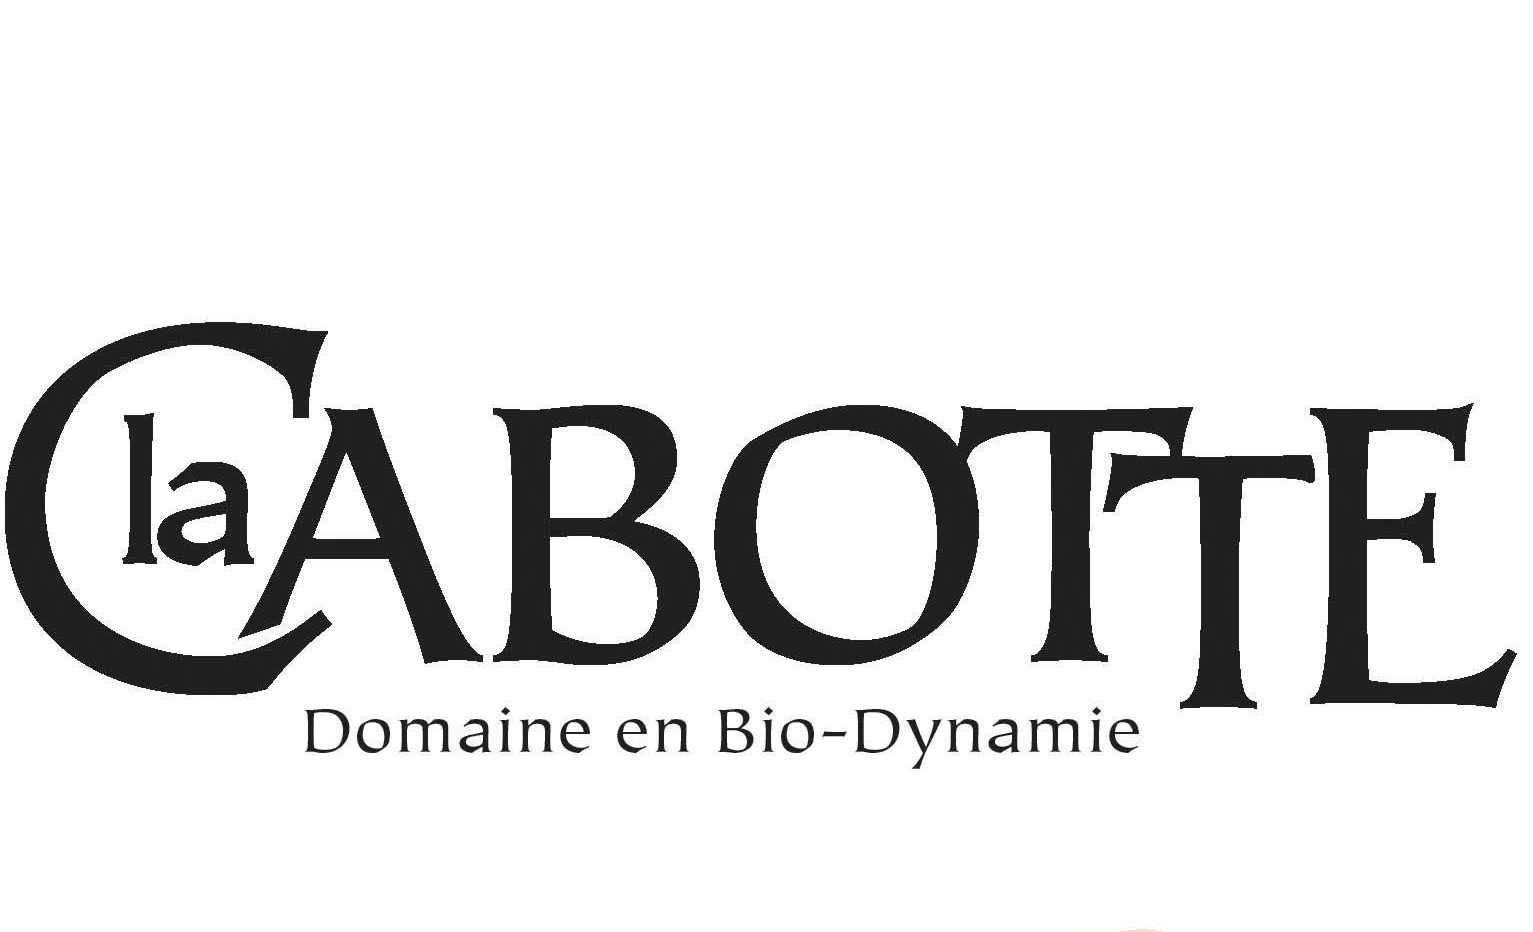 Domaine La Cabotte